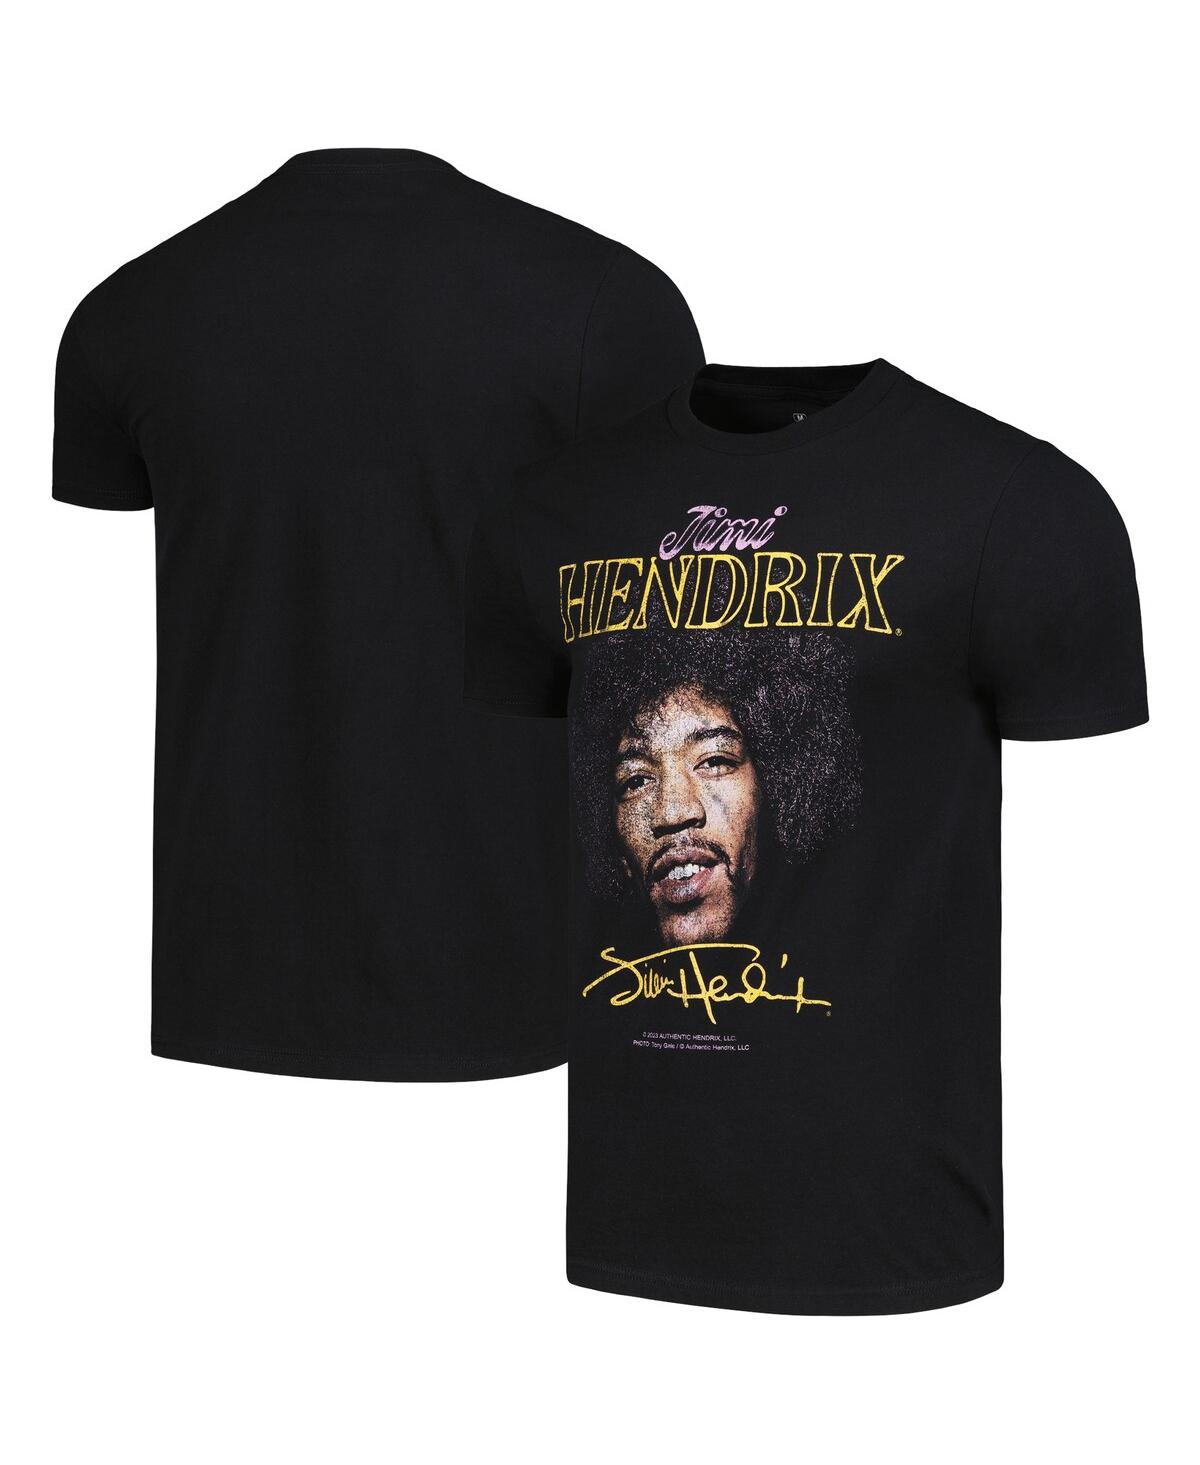 Men's Black Jimi Hendrix Graphic T-shirt - Black